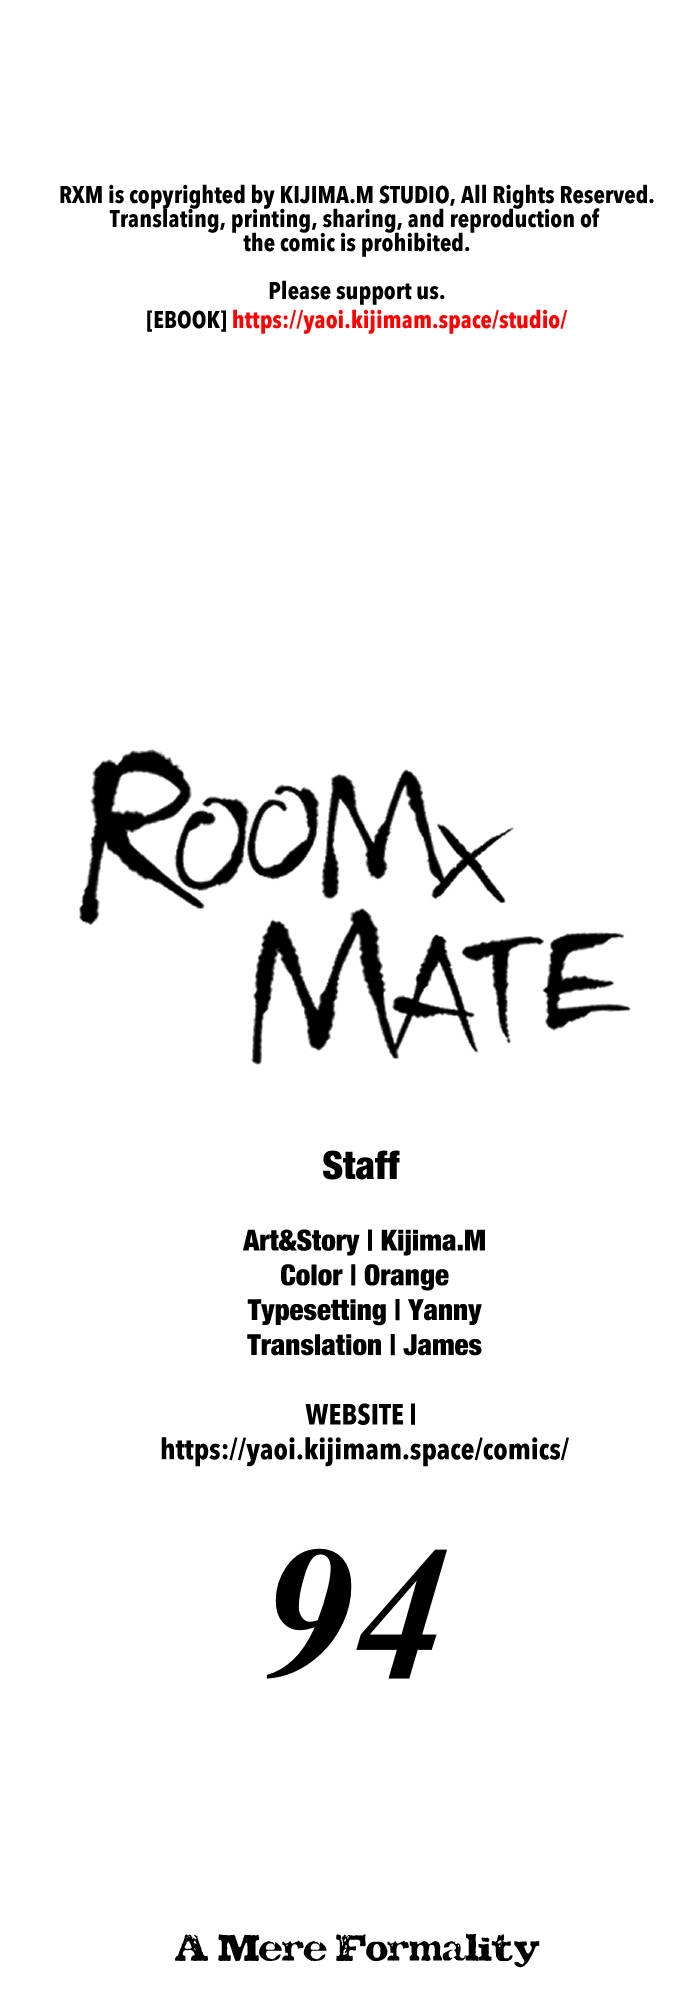 RoomXMate 94